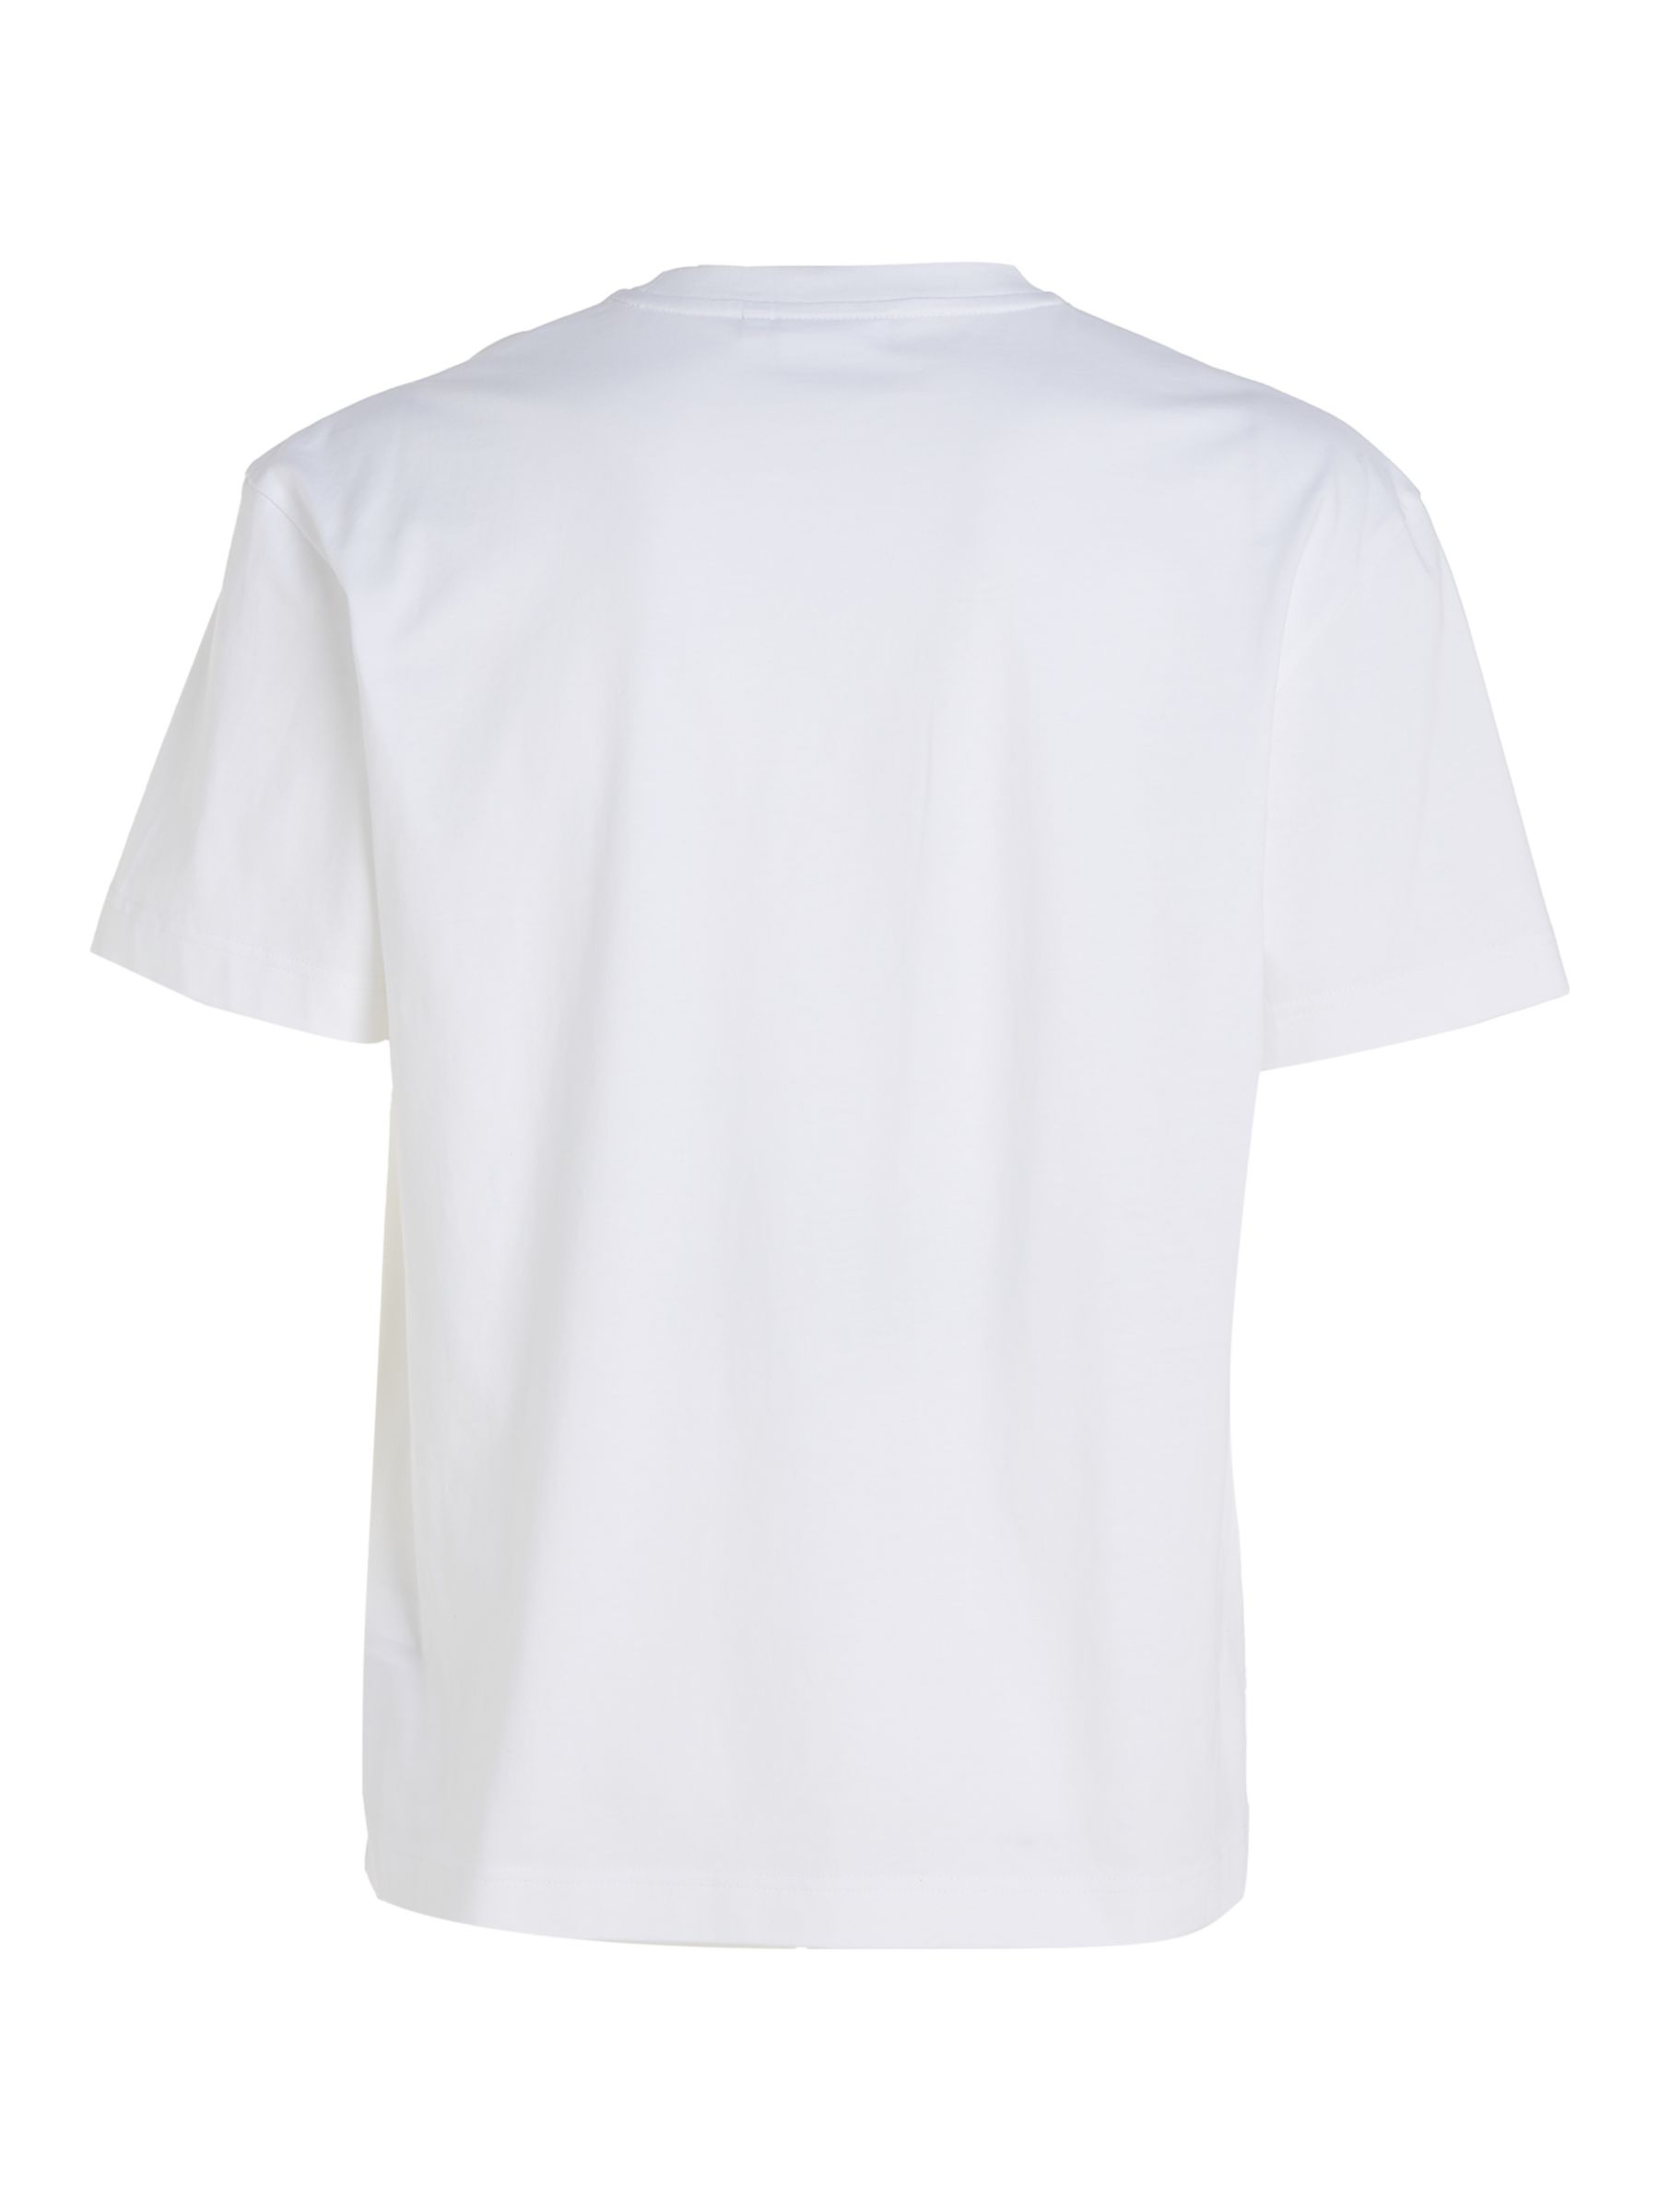 Calvin Klein Logo Comfort T-Shirt, Bright White at John Lewis & Partners